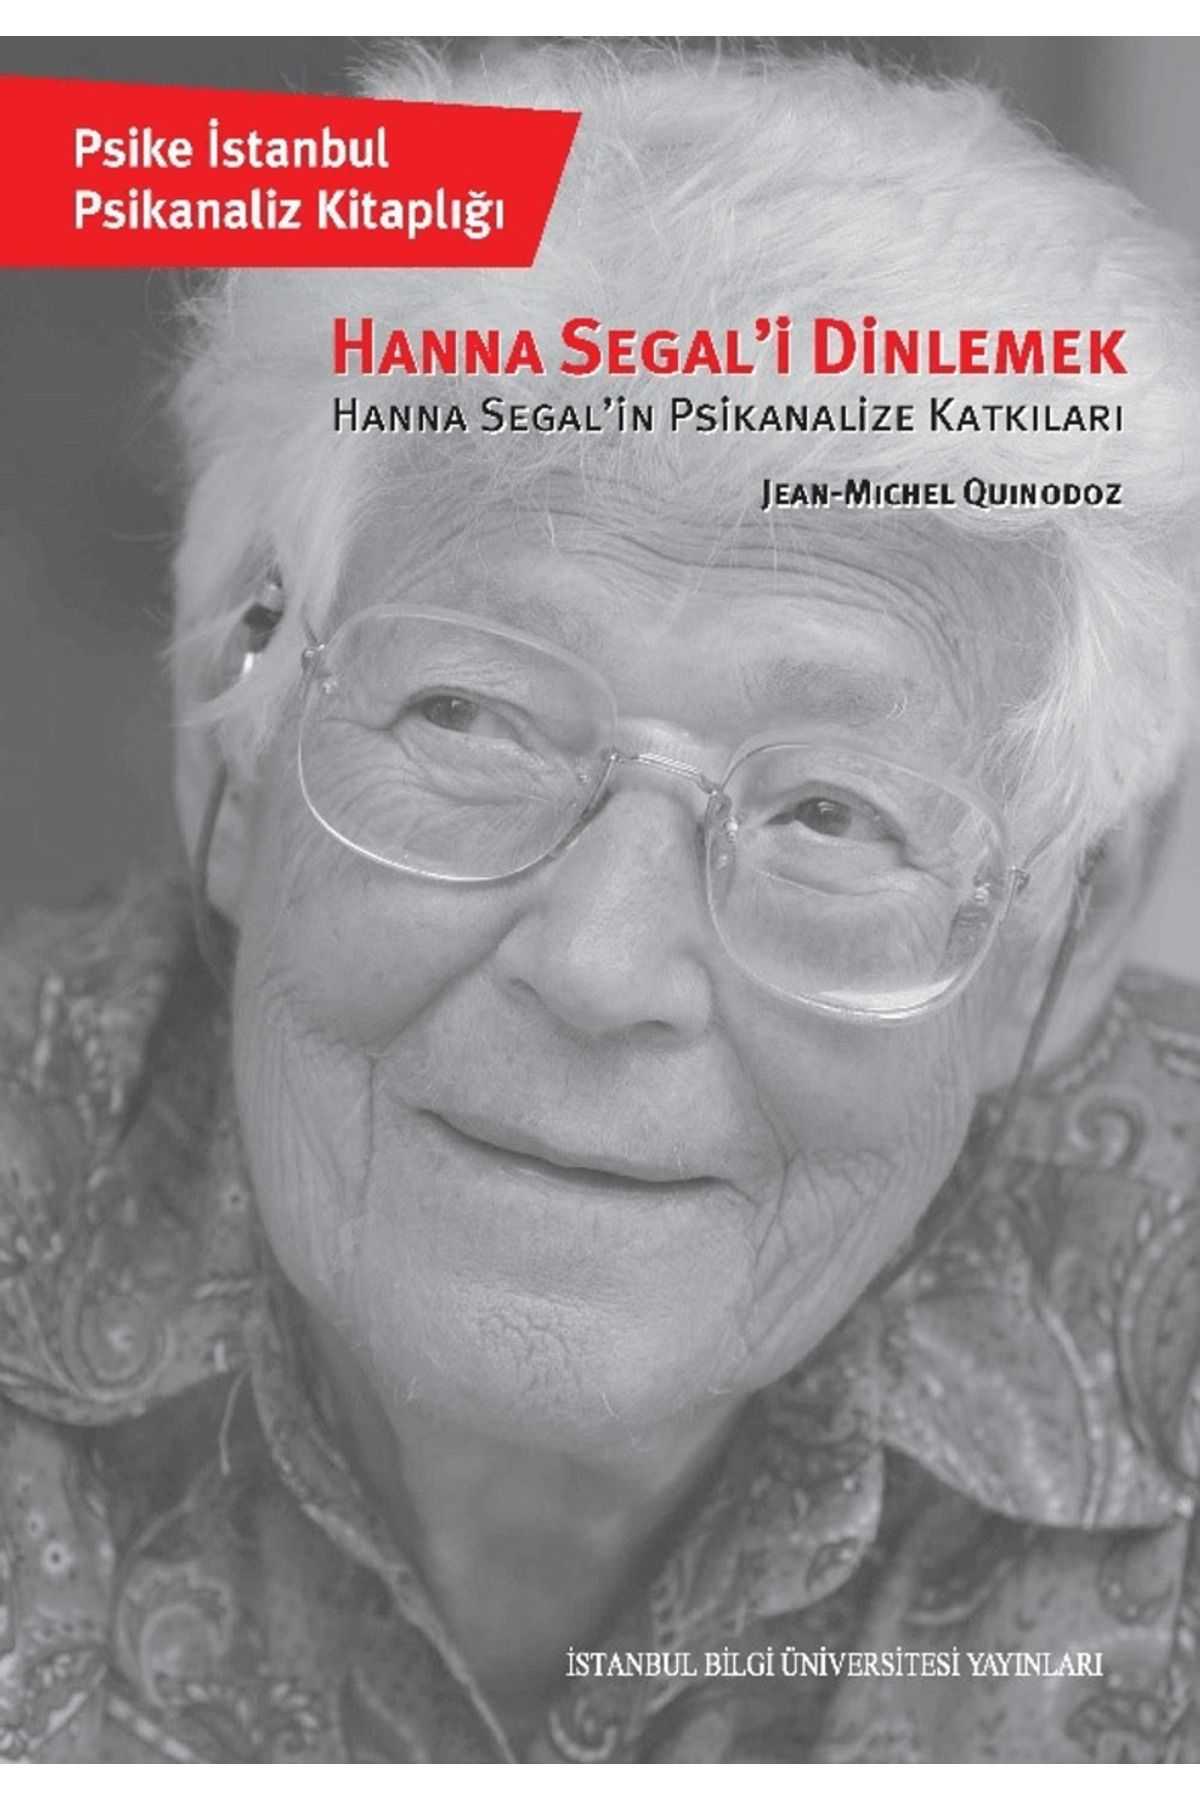 İstanbul Bilgi Üniversitesi Yayınları Hanna Segal'i Dinlemek / İstanbul Bilgi Üniversitesi Yayınları / 9786053996163